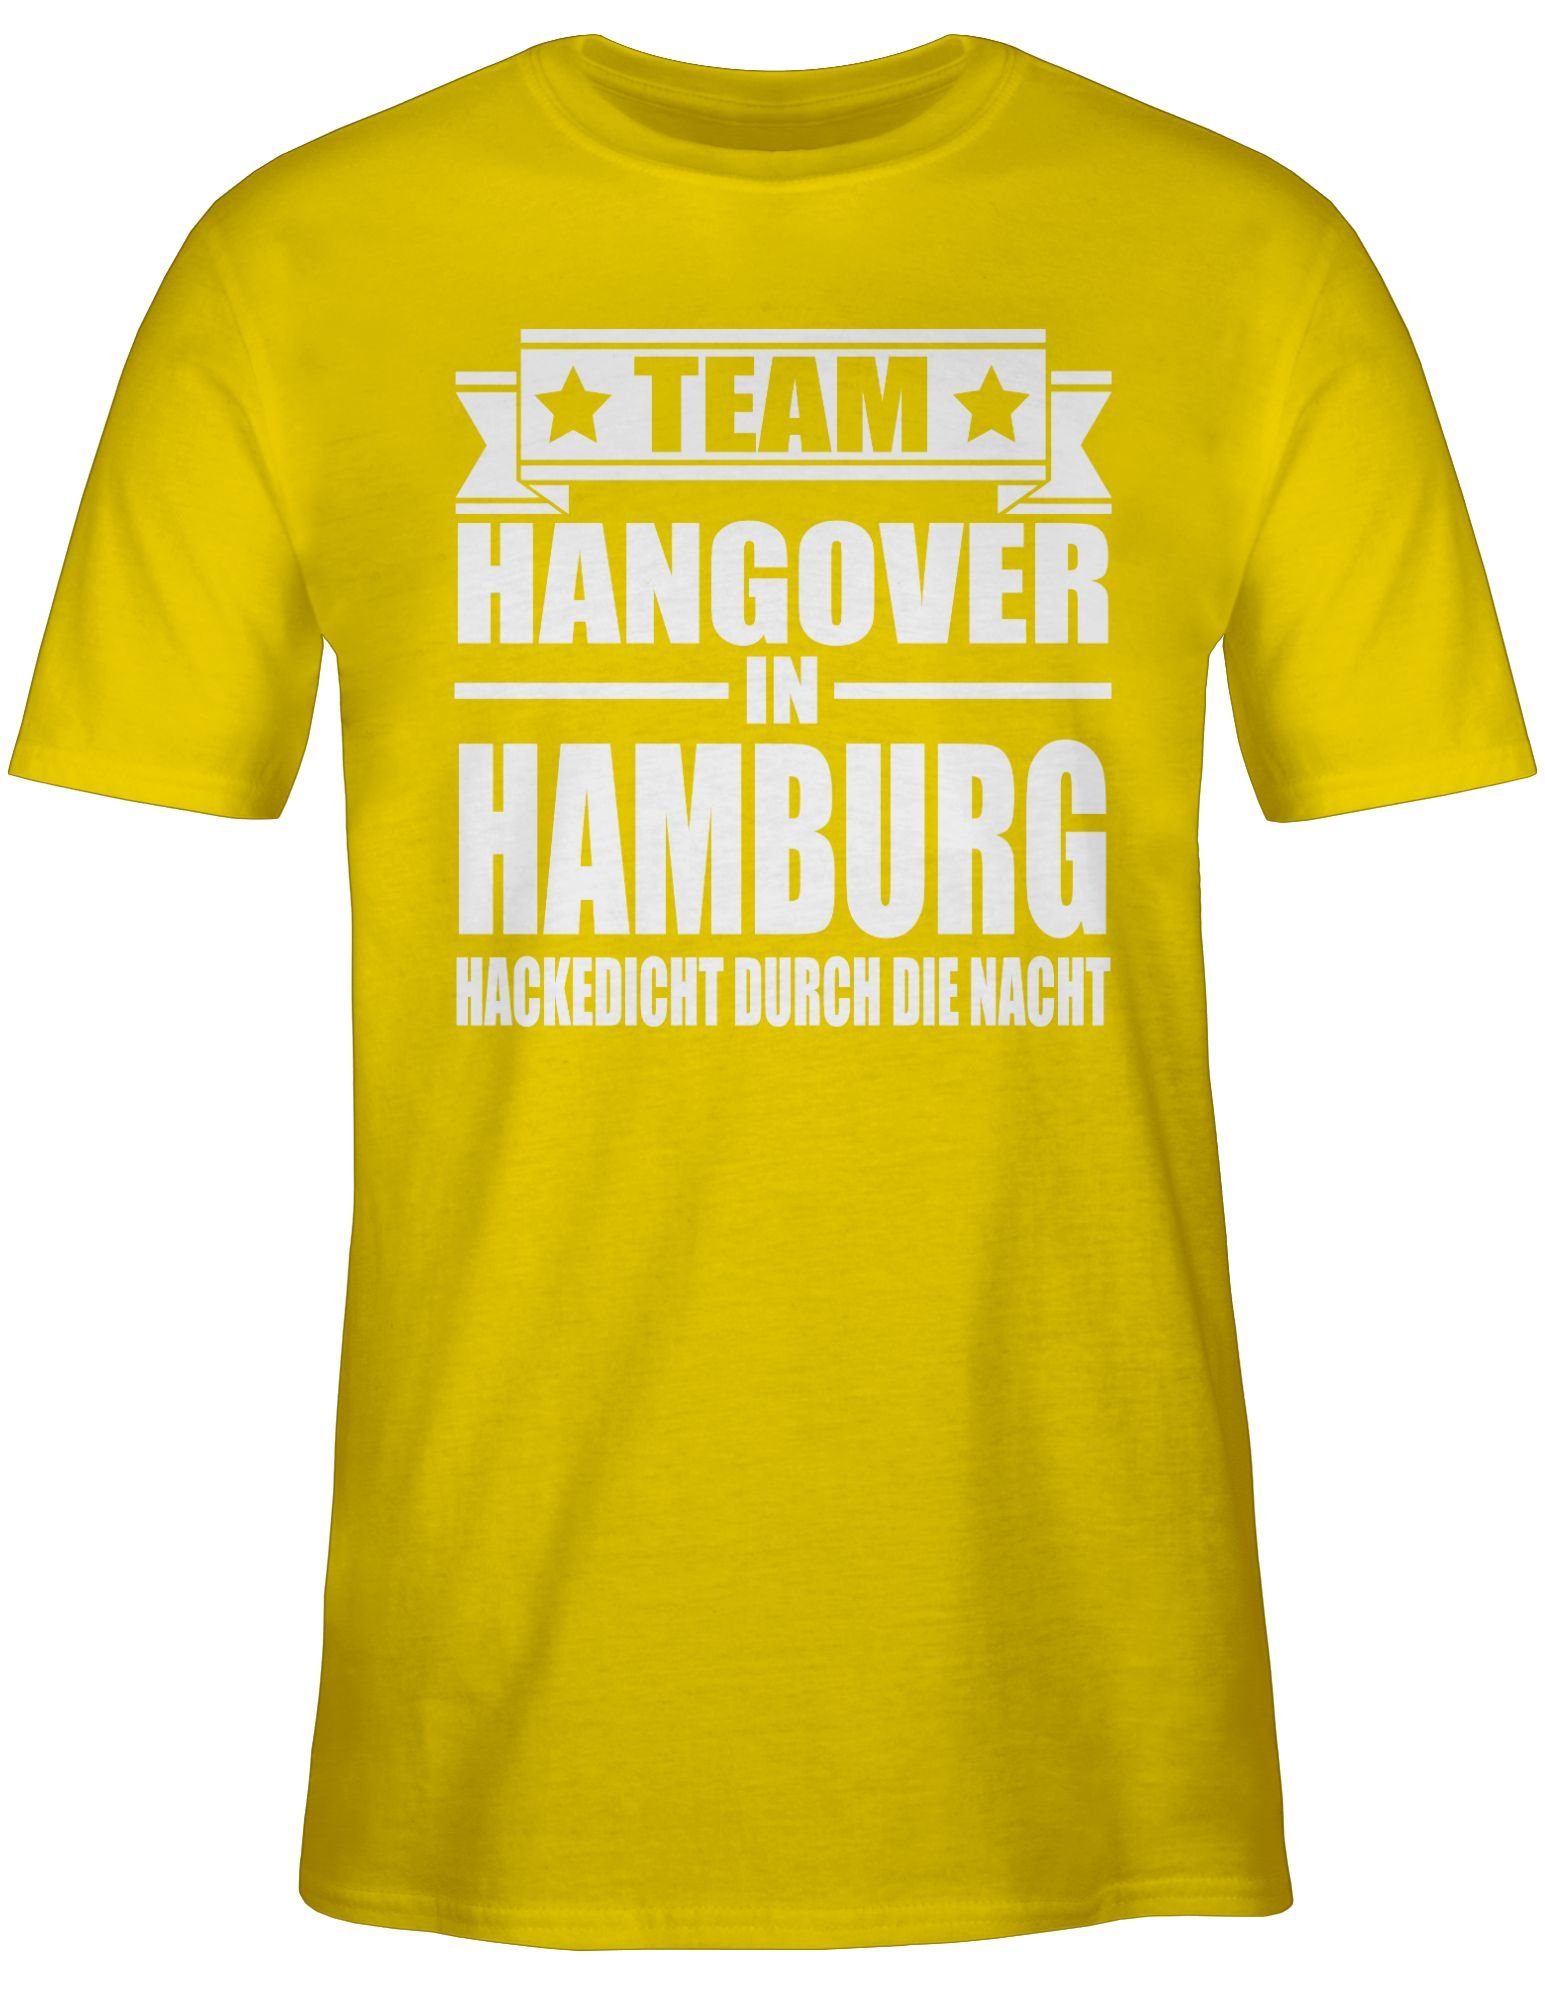 T-Shirt 2 Gelb in Hangover Team Männer JGA Shirtracer Hamburg